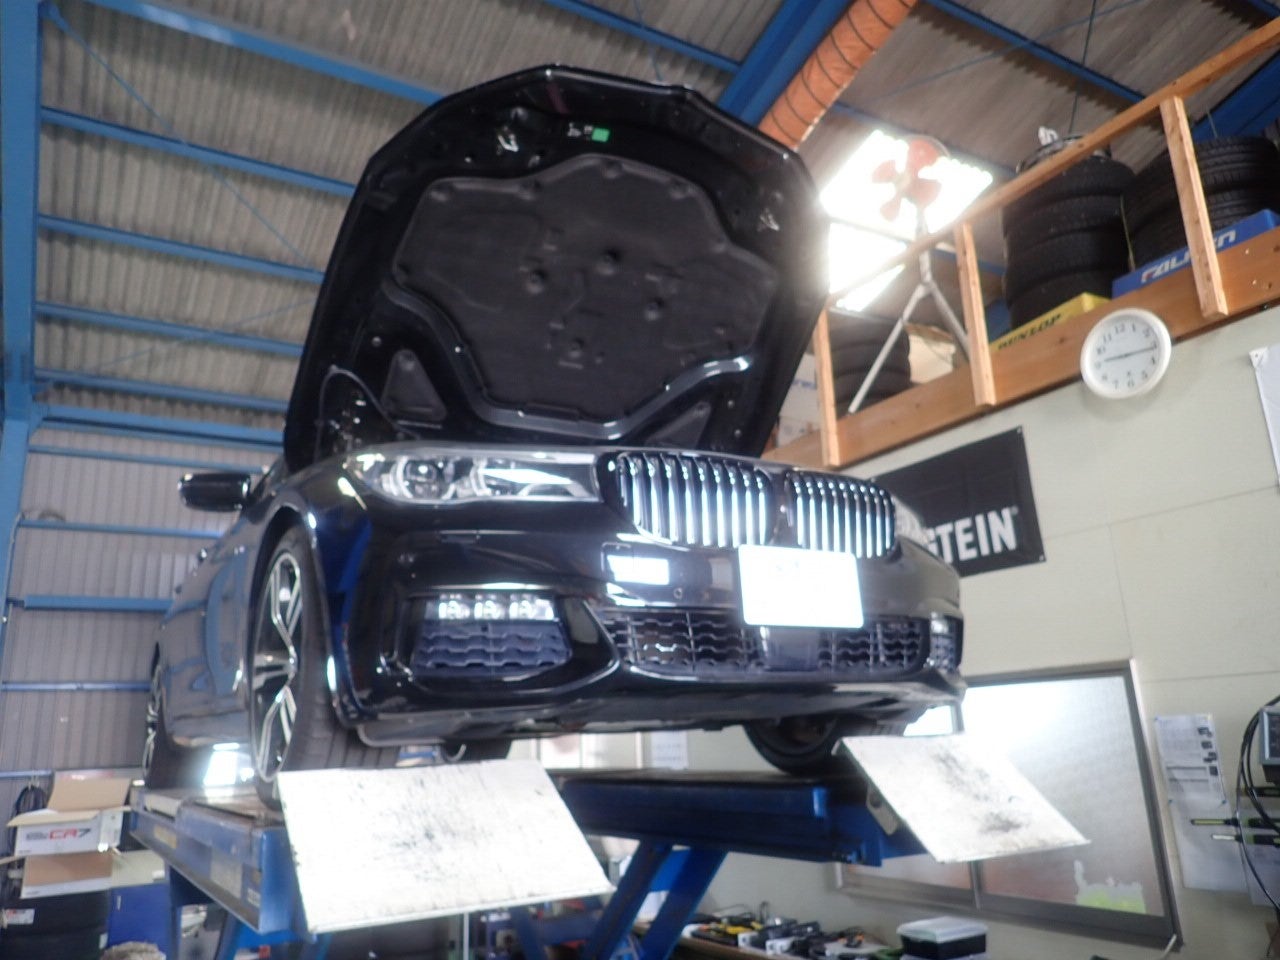 トラブル修理-BMW 740i(G11)冷却水が減るから時々補充している